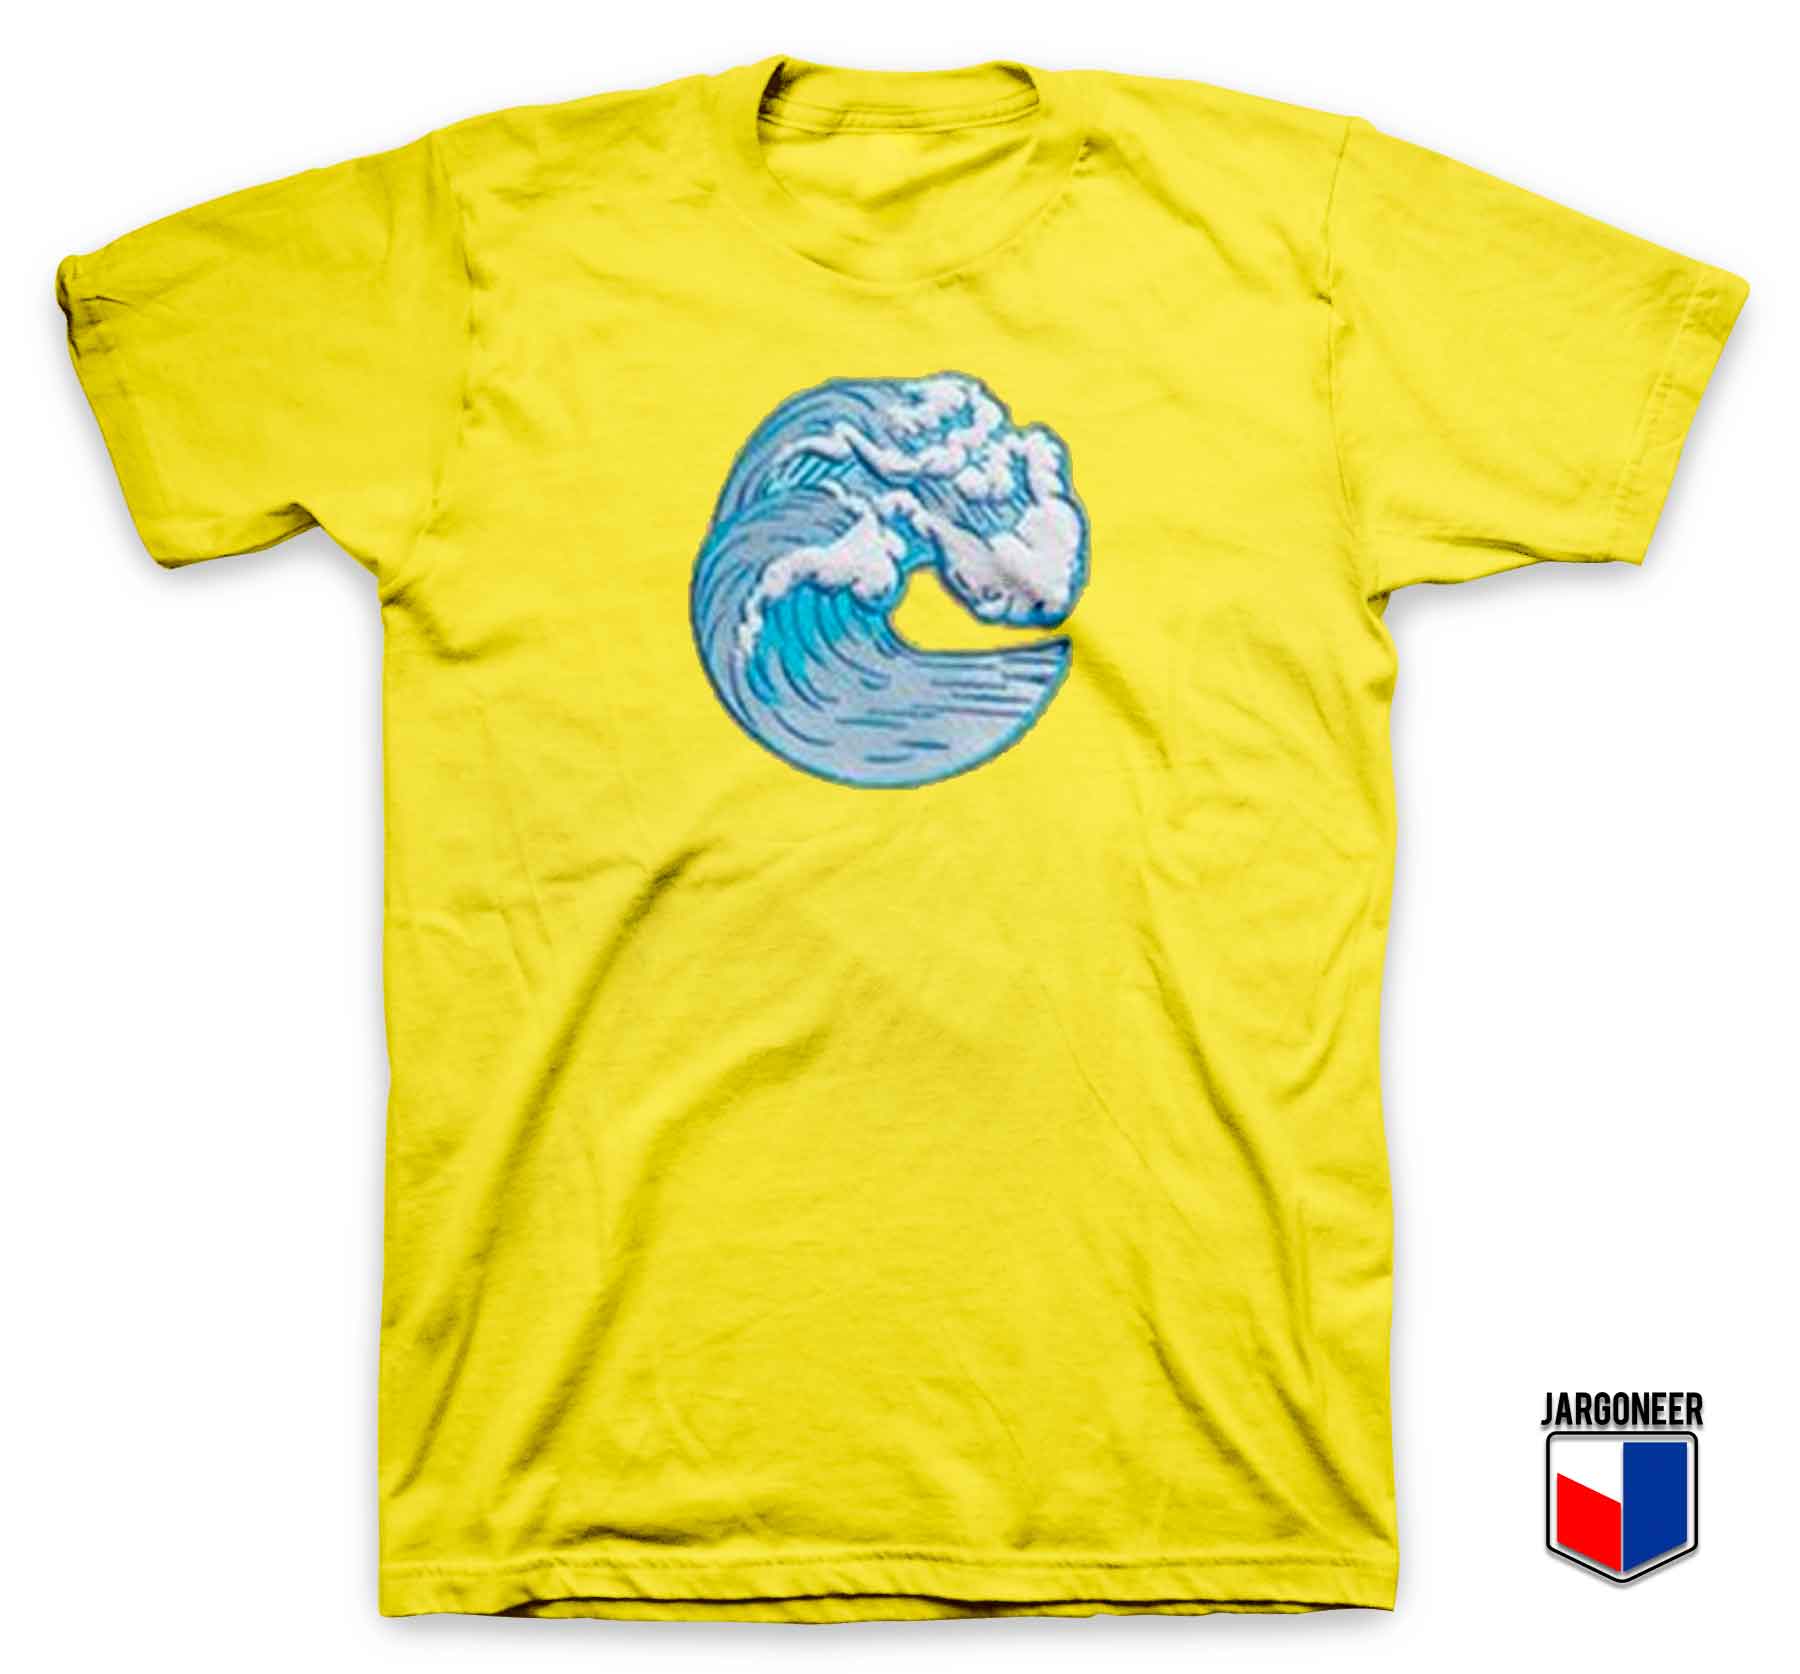 Ocean Wave - Shop Unique Graphic Cool Shirt Designs